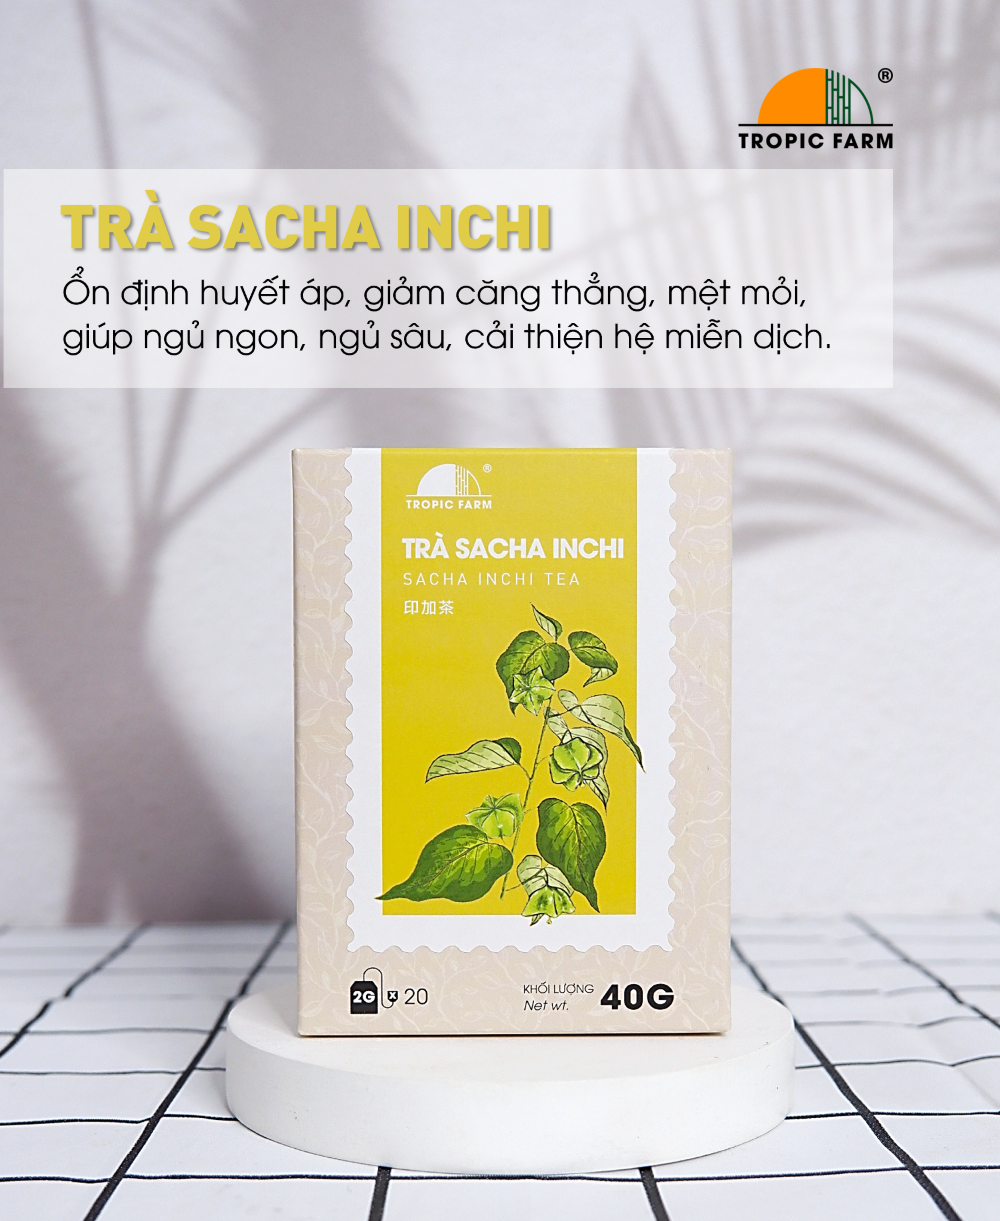 Trà Sacha Inchi Túi Lọc - Tropic Farm - Hộp 40g - Ổn định huyết áp, giúp ngủ ngon, ngăn ngừa cục máu đông